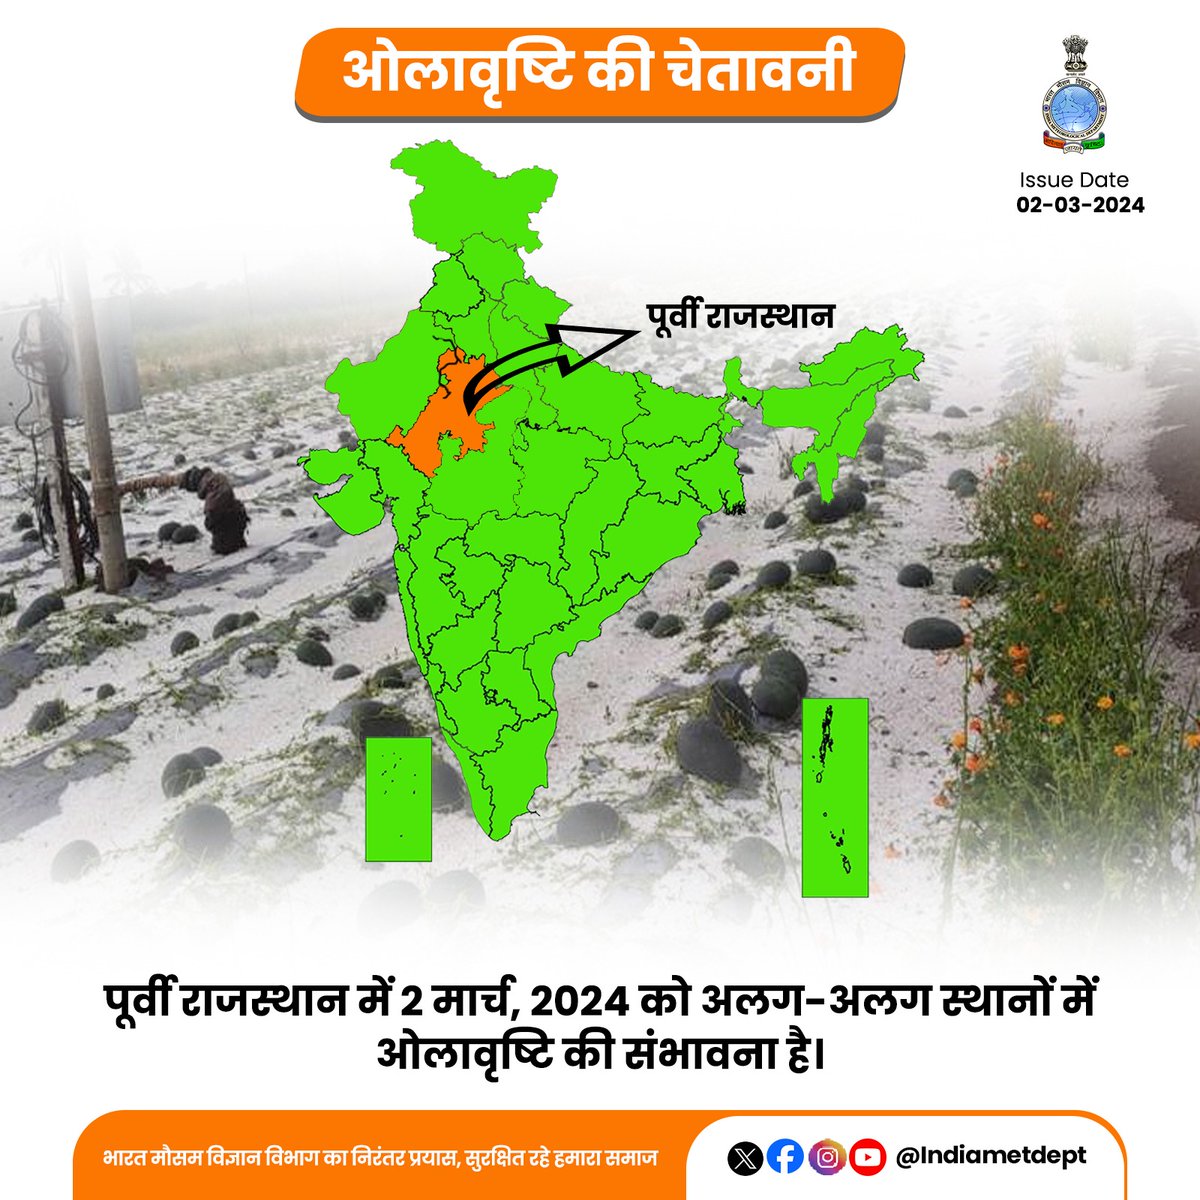 पूर्वी राजस्थान में 2 मार्च, 2024 को अलग-अलग स्थानों में ओलावृष्टि की संभावना है। 

#RajasthanWeather #HailstormAlert 

@moesgoi
@DDNewslive
@ndmaindia
@airnewsalerts